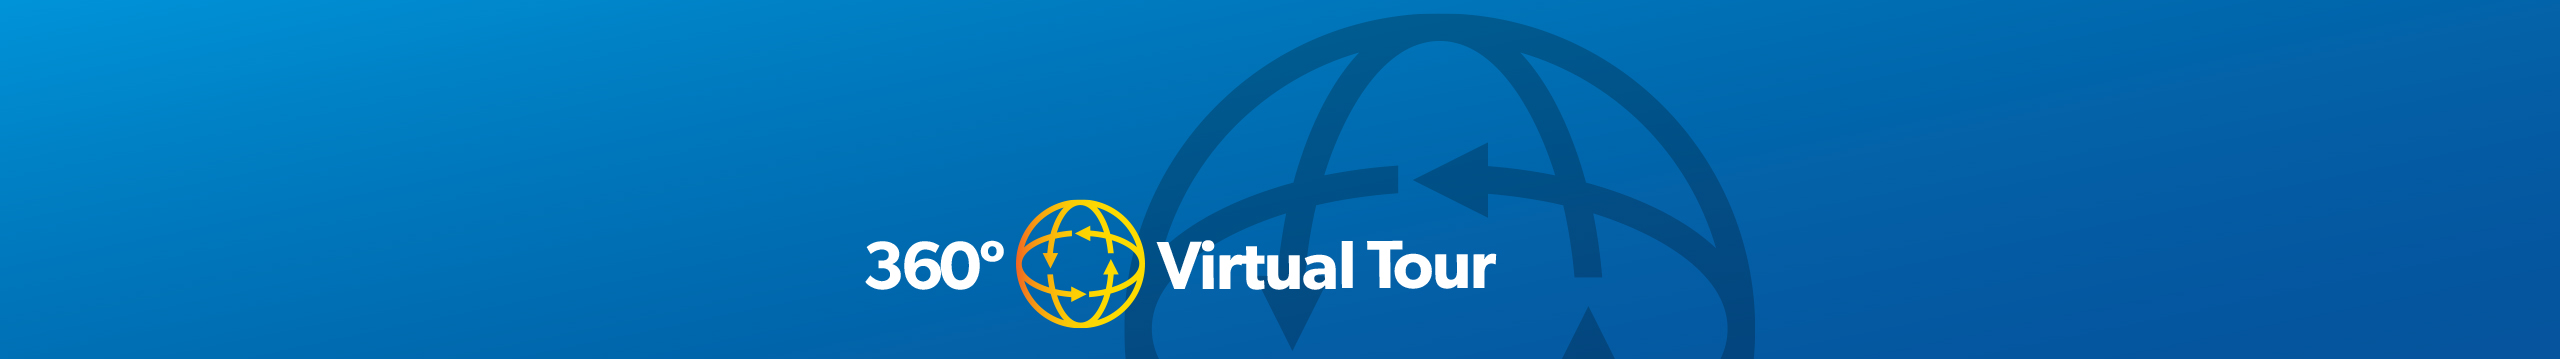 360 degree Virtual Tour